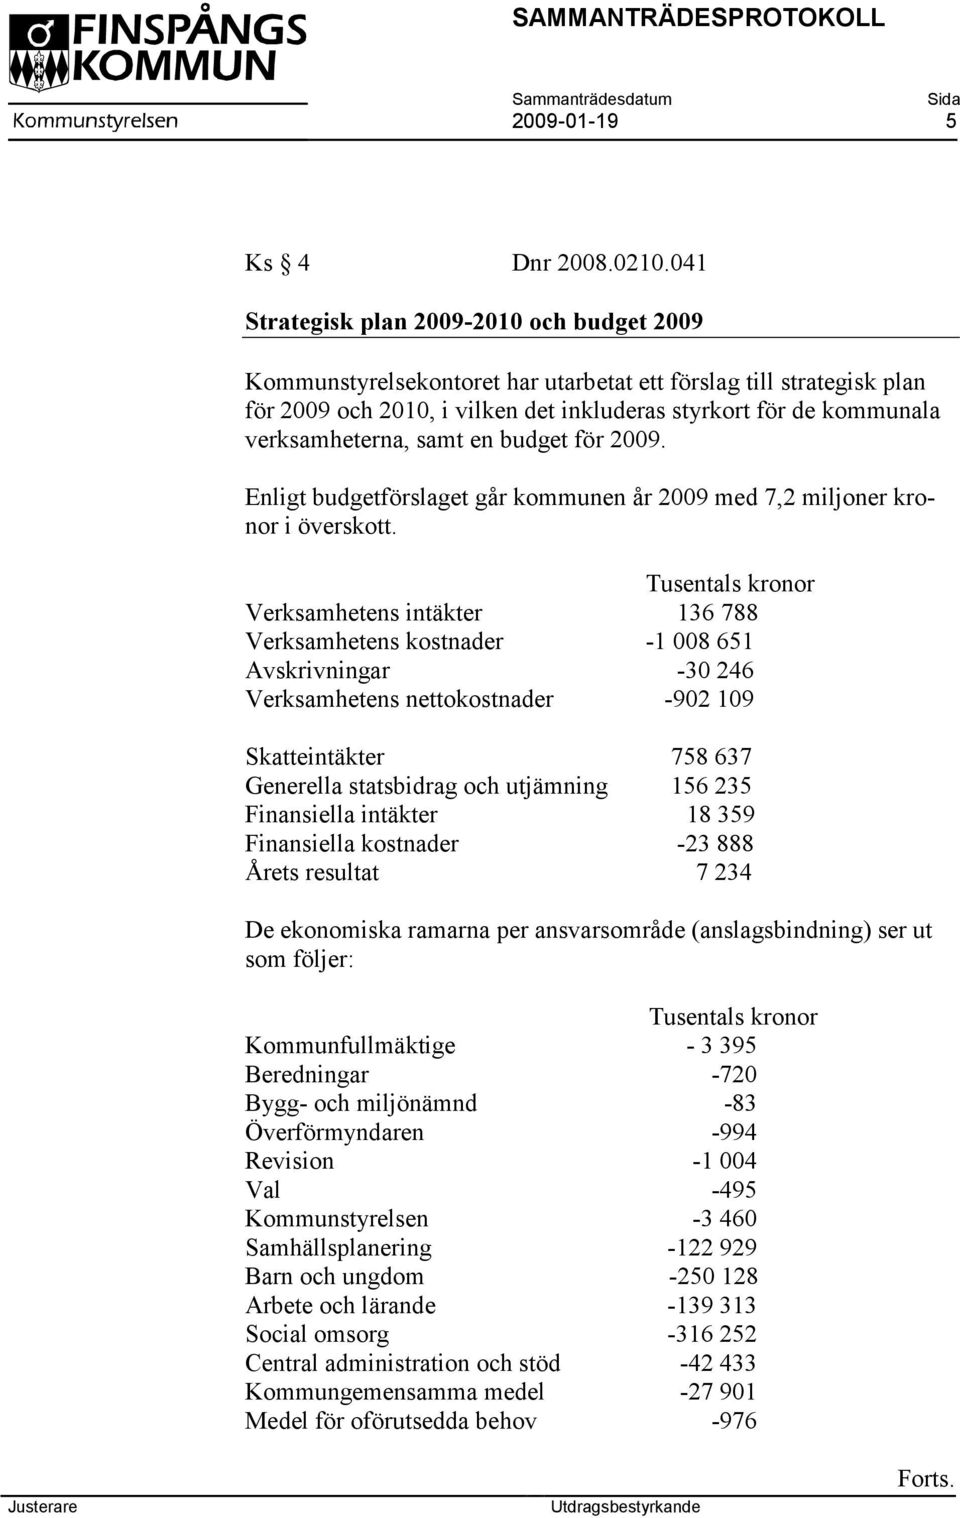 verksamheterna, samt en budget för 2009. Enligt budgetförslaget går kommunen år 2009 med 7,2 miljoner kronor i överskott.